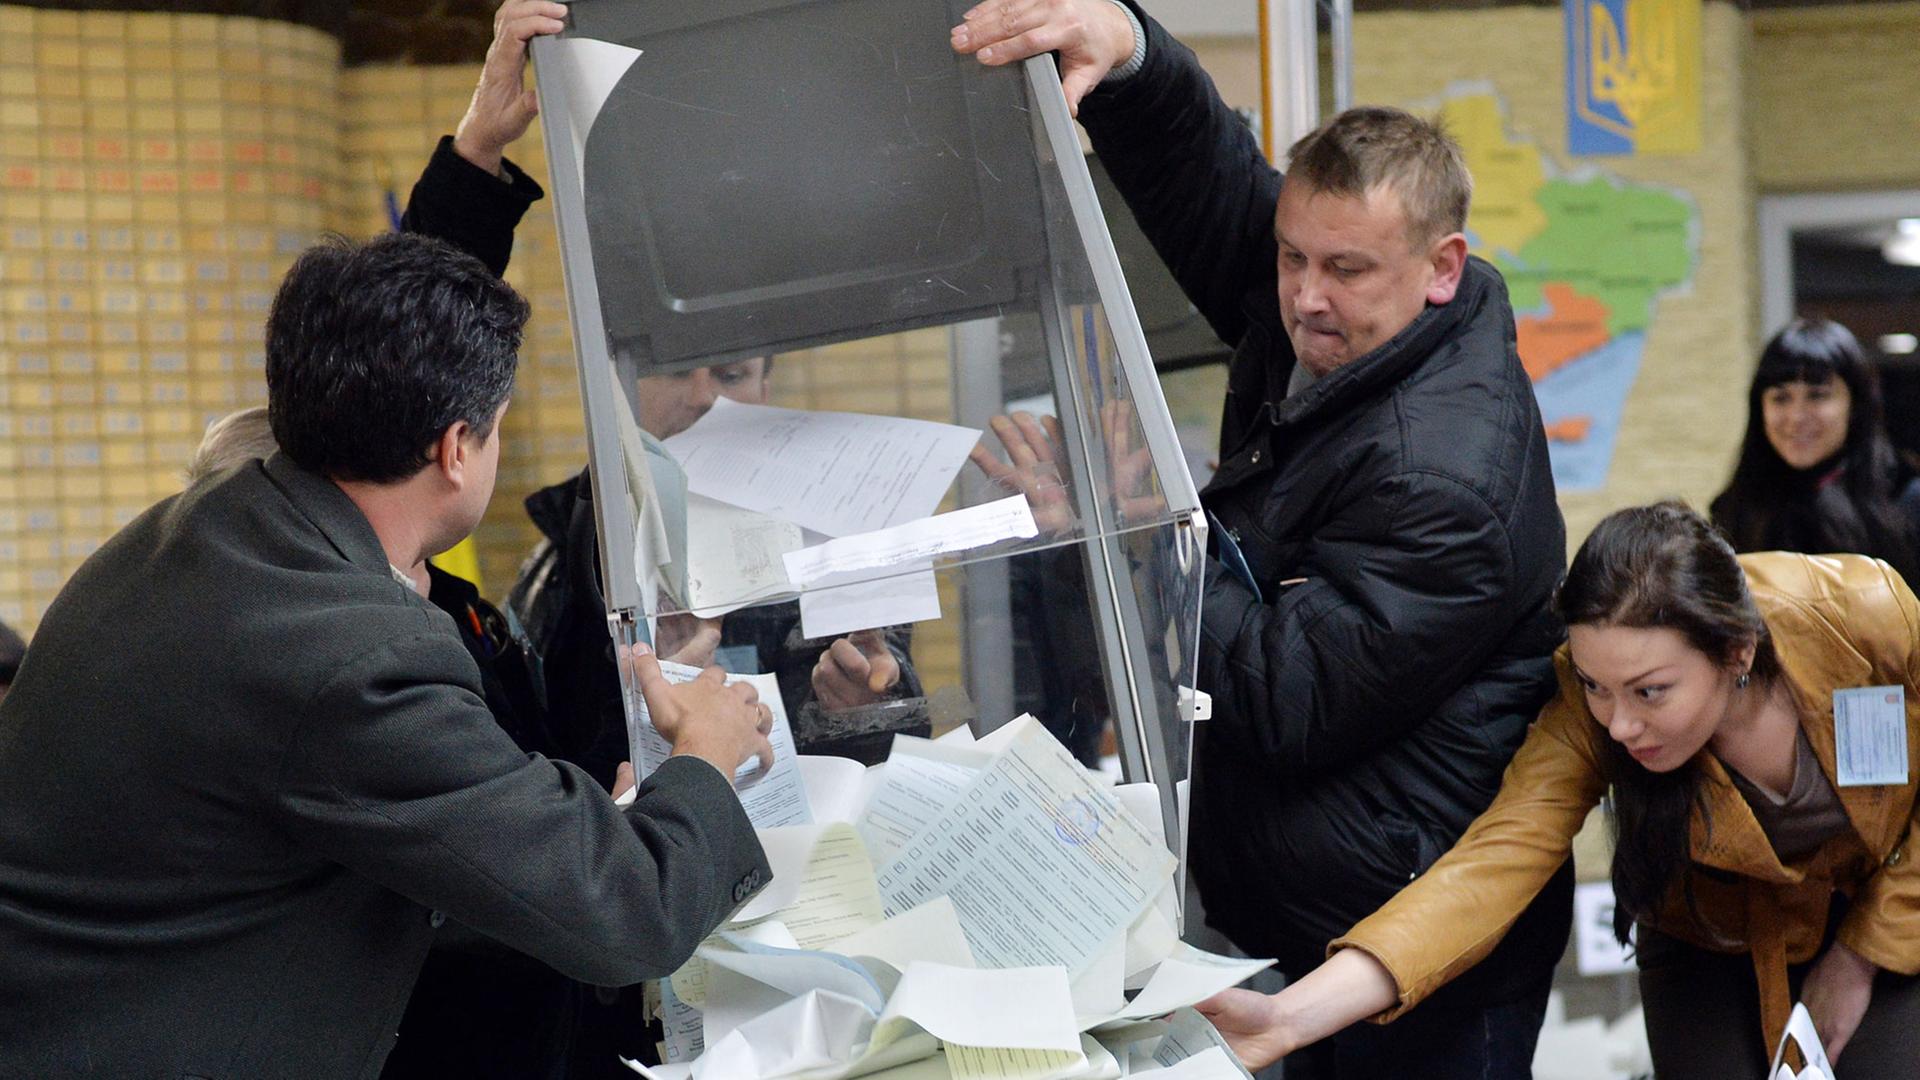 Wahlhelfer in Kramatorsk beginnen nach der ukrainischen Parlamentswahl mit der Auszählung der Stimmen.